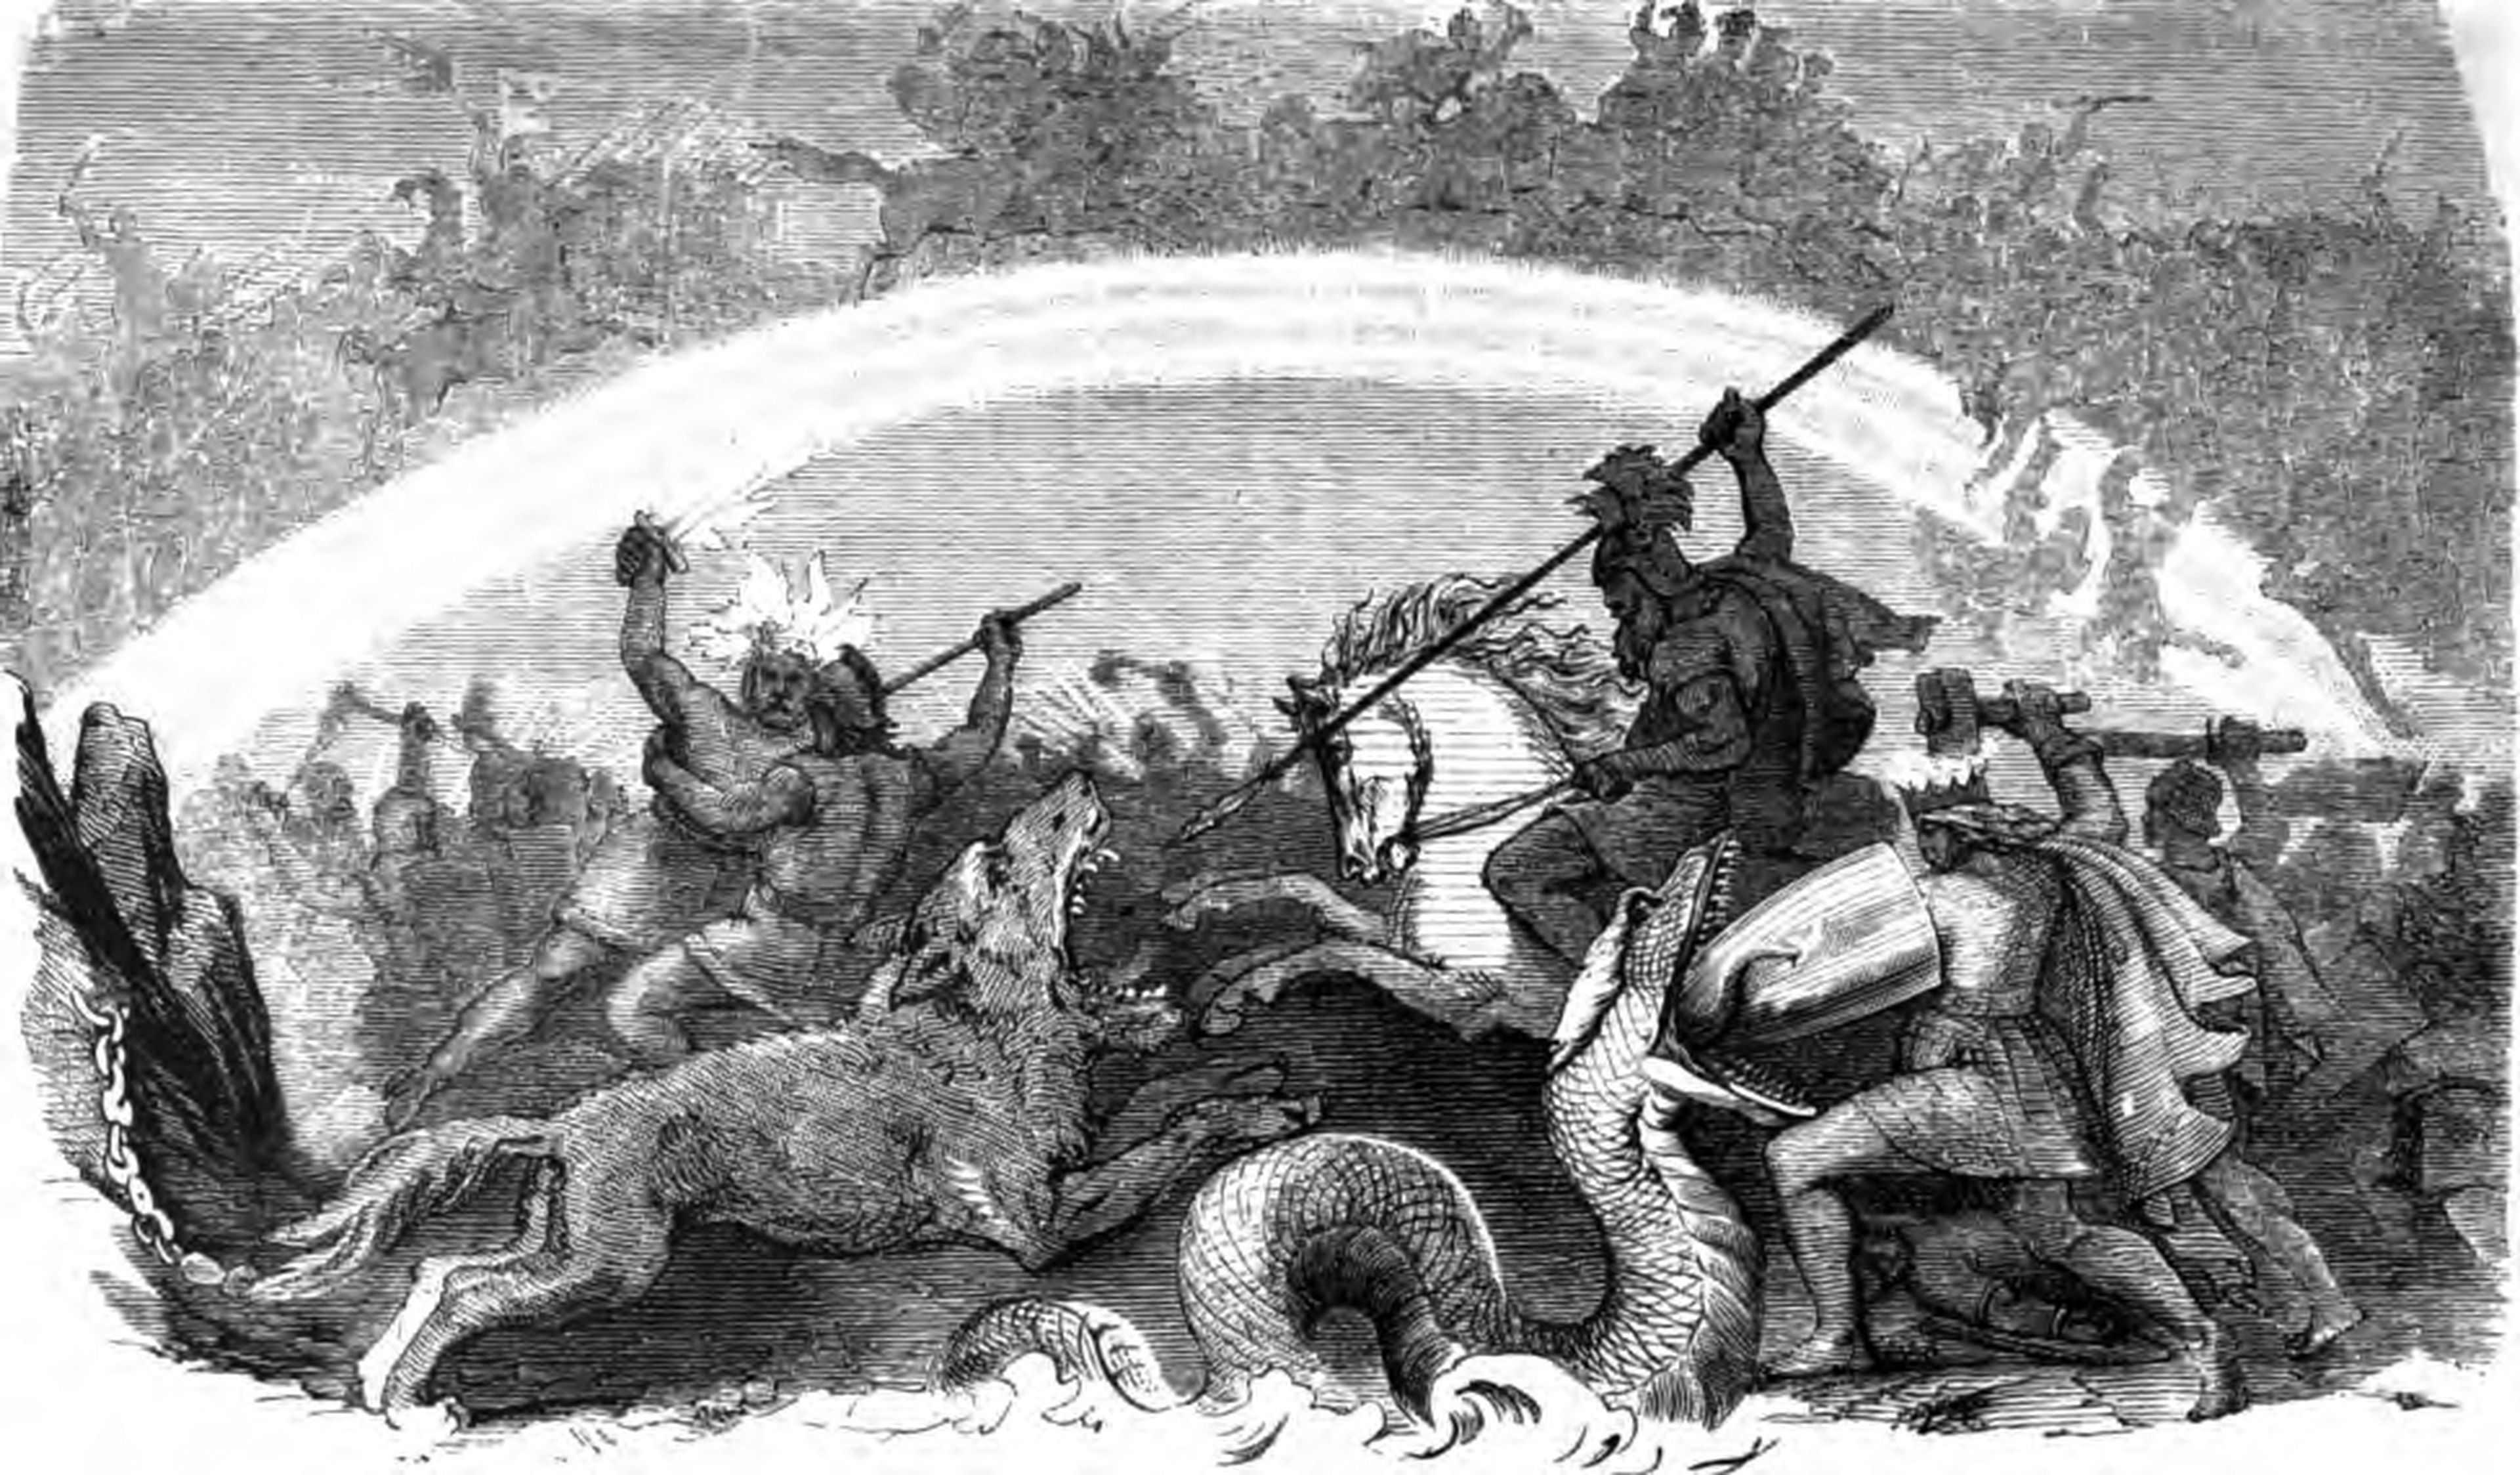 Batalla de dioses malditos, por Friedrich Wilhelm Heine